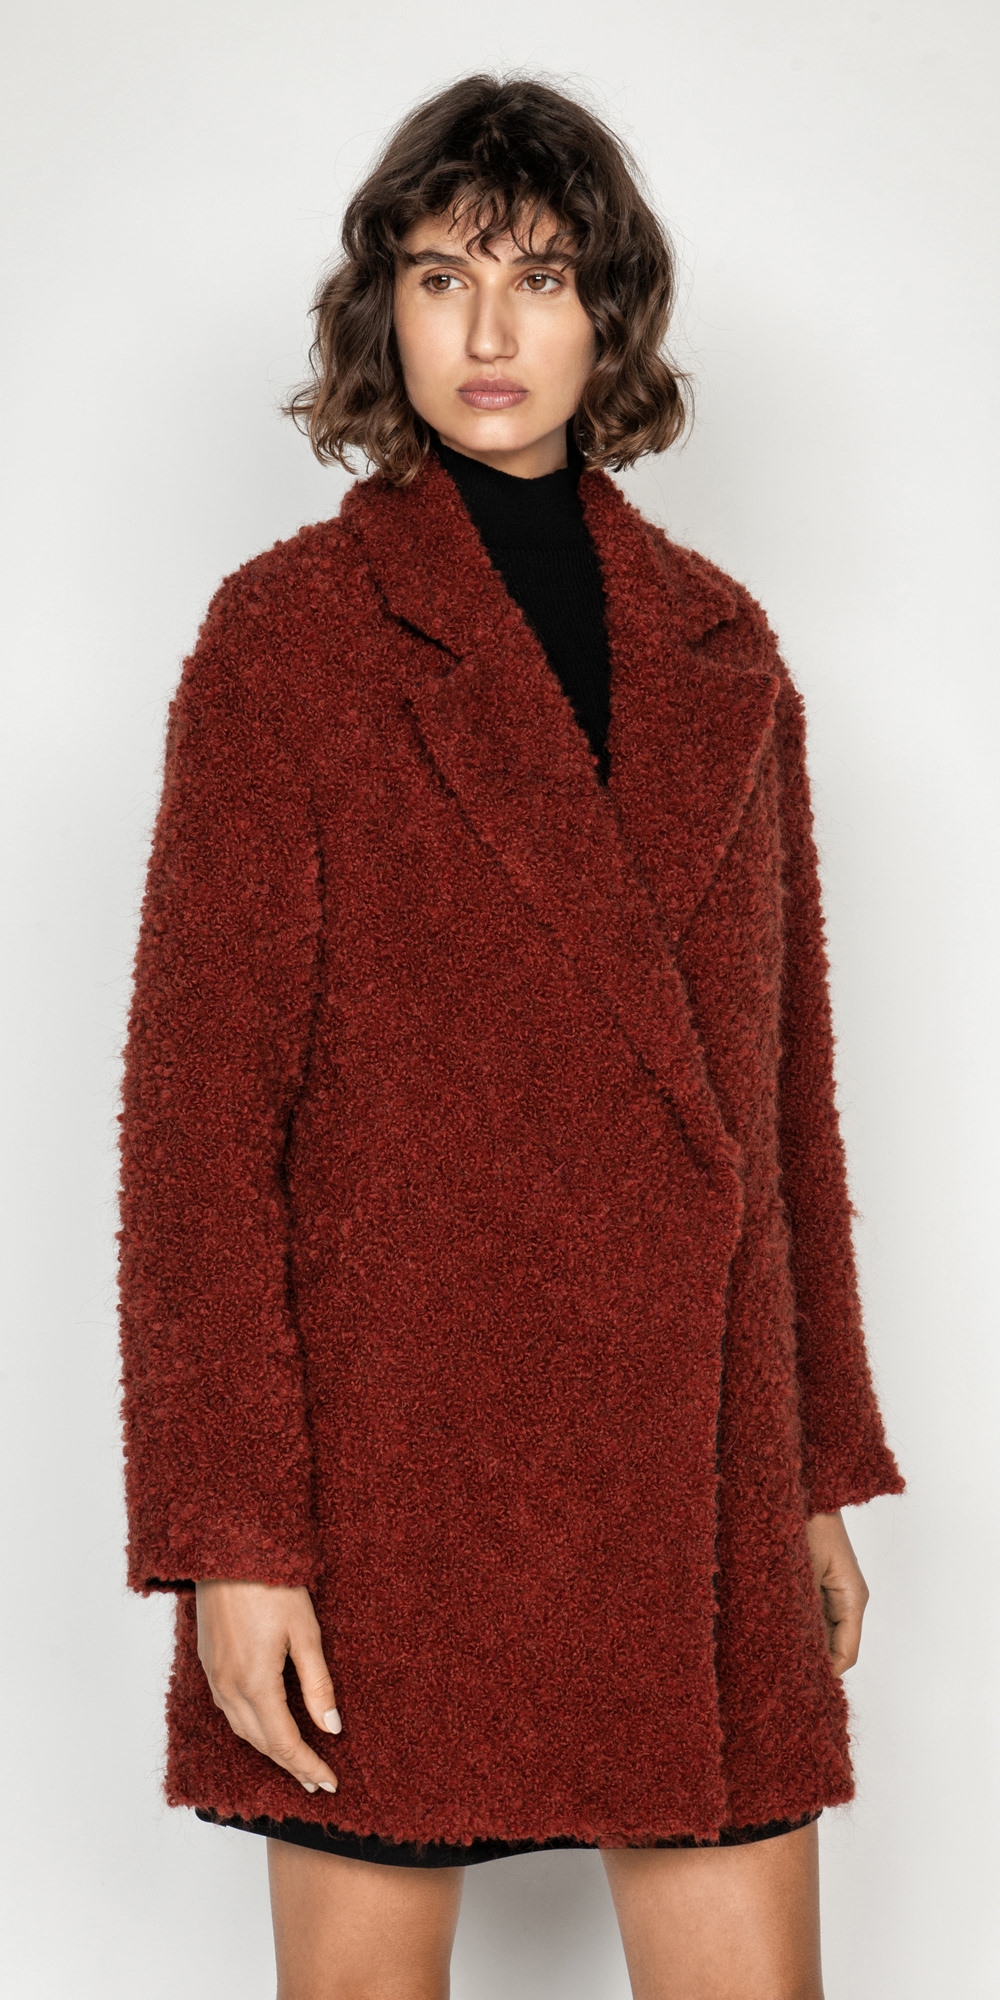 Boucle Coat | Buy Coats Online - Cue